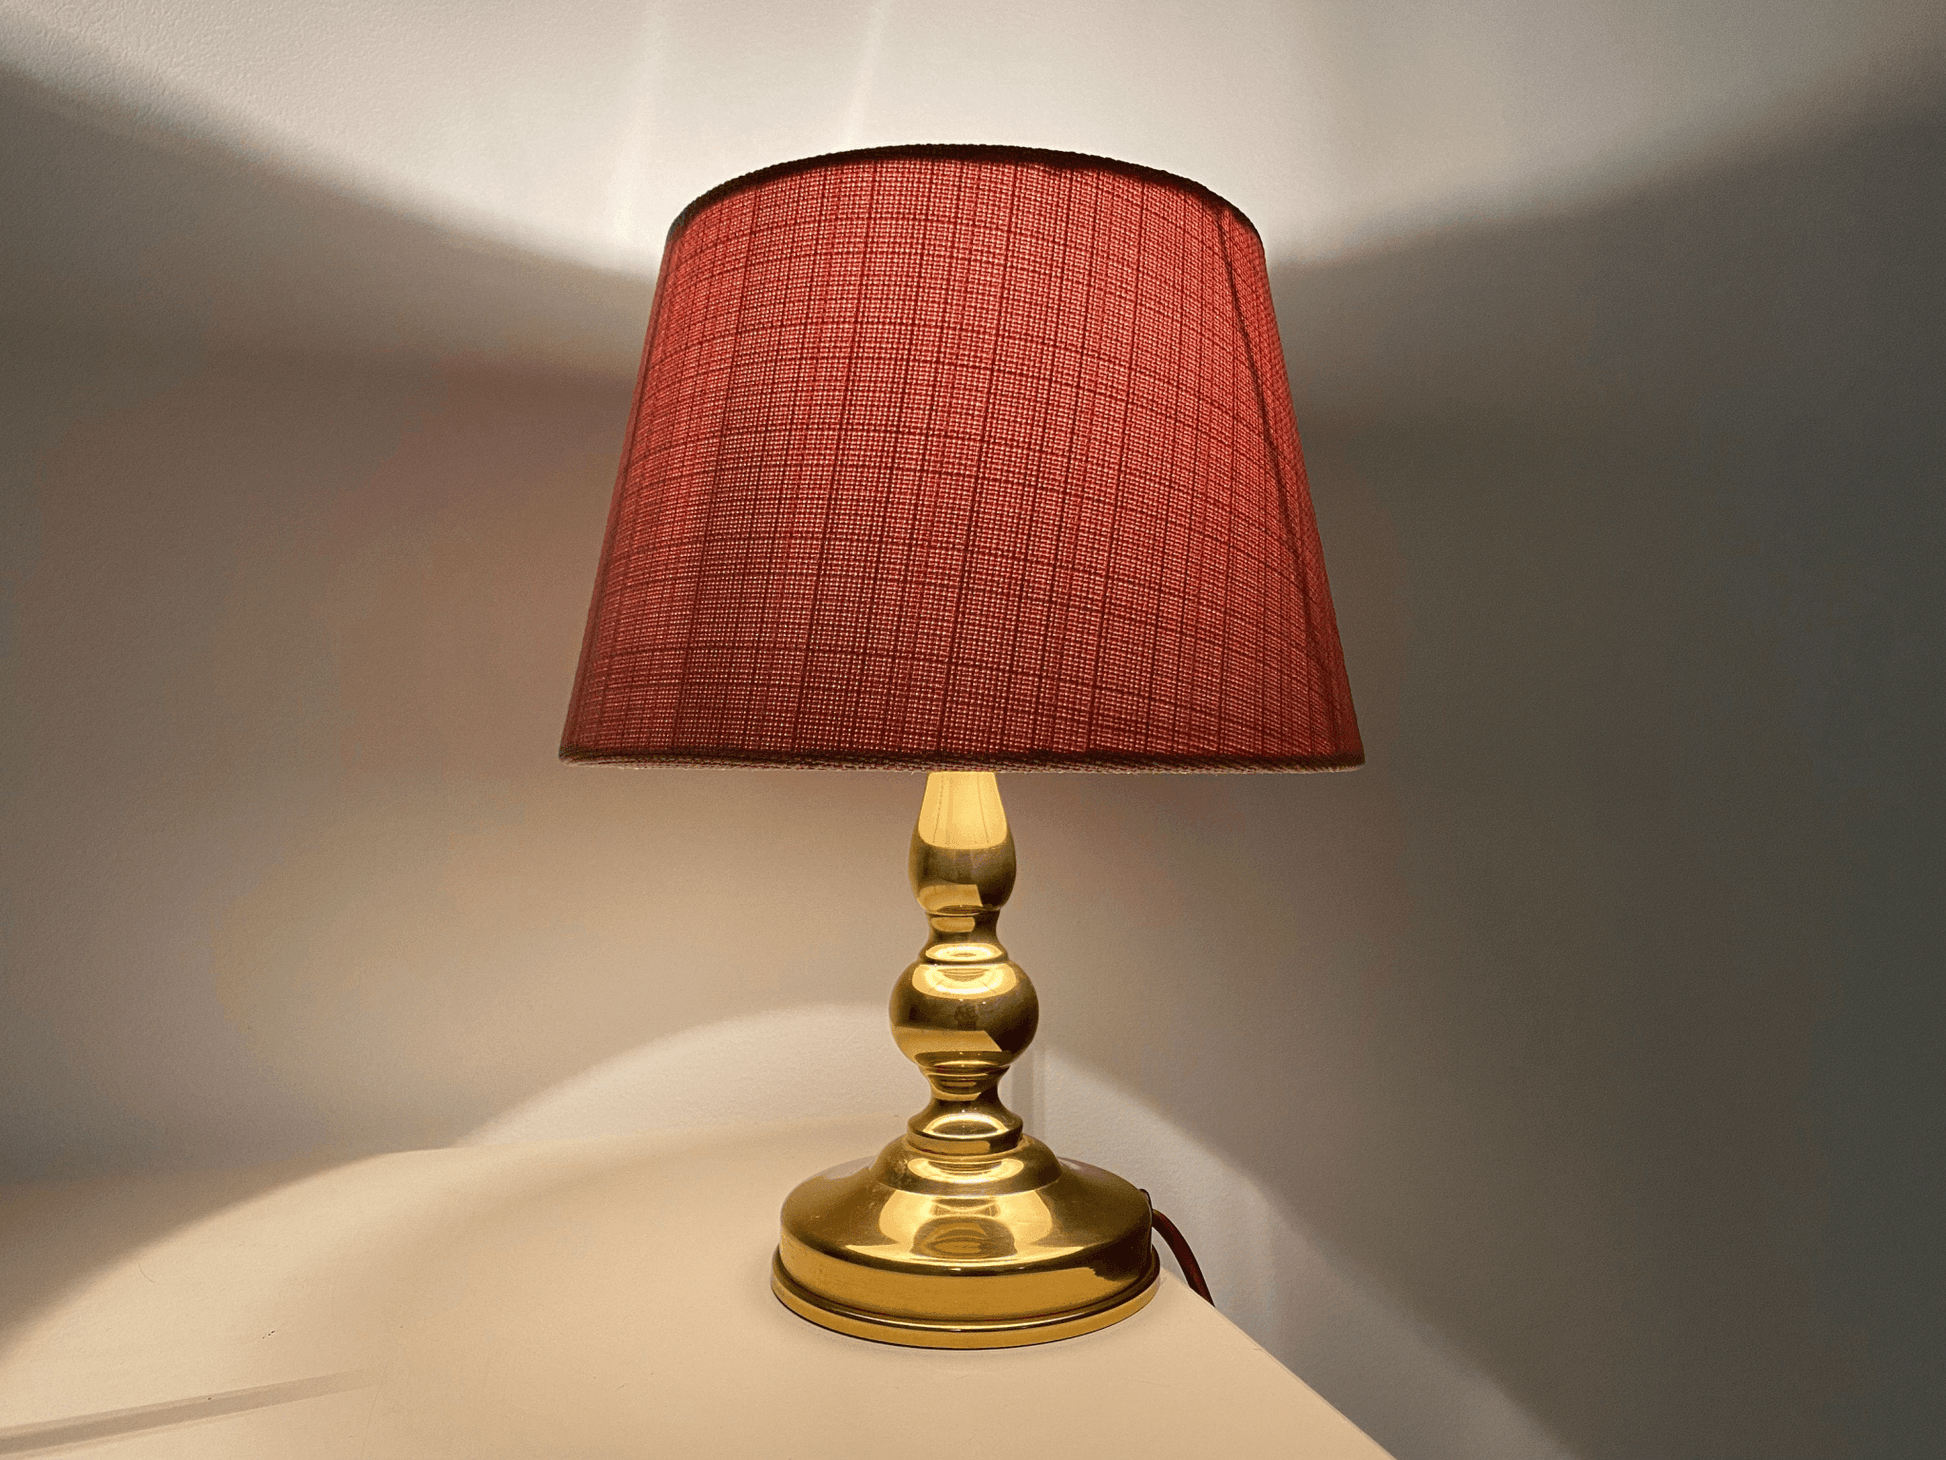 Vintage HERDA Design Lamp Holland - Gold Colored Brass Metal